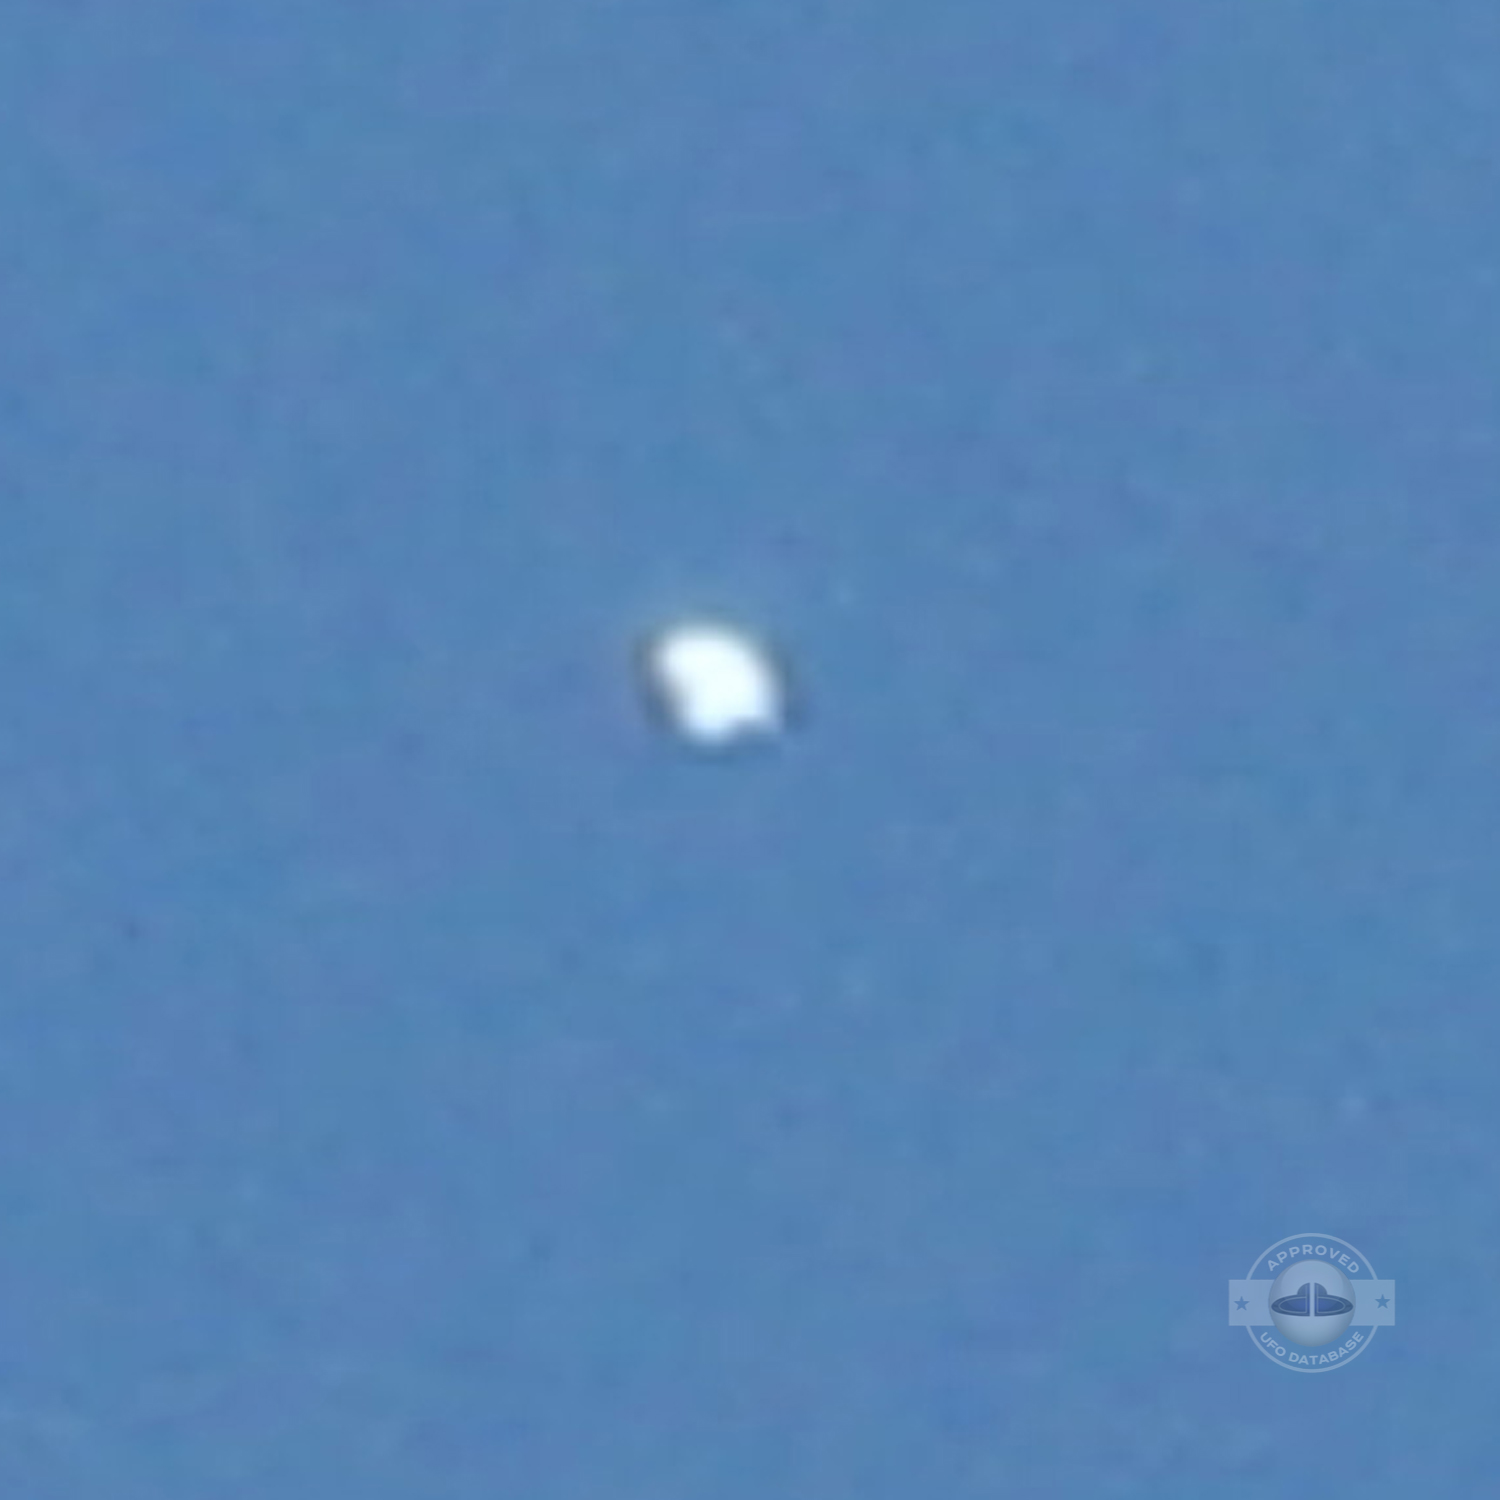 Extremely Shinning UFO probe over Yavatmal | Maharashtra, India 2009 UFO Picture #212-2